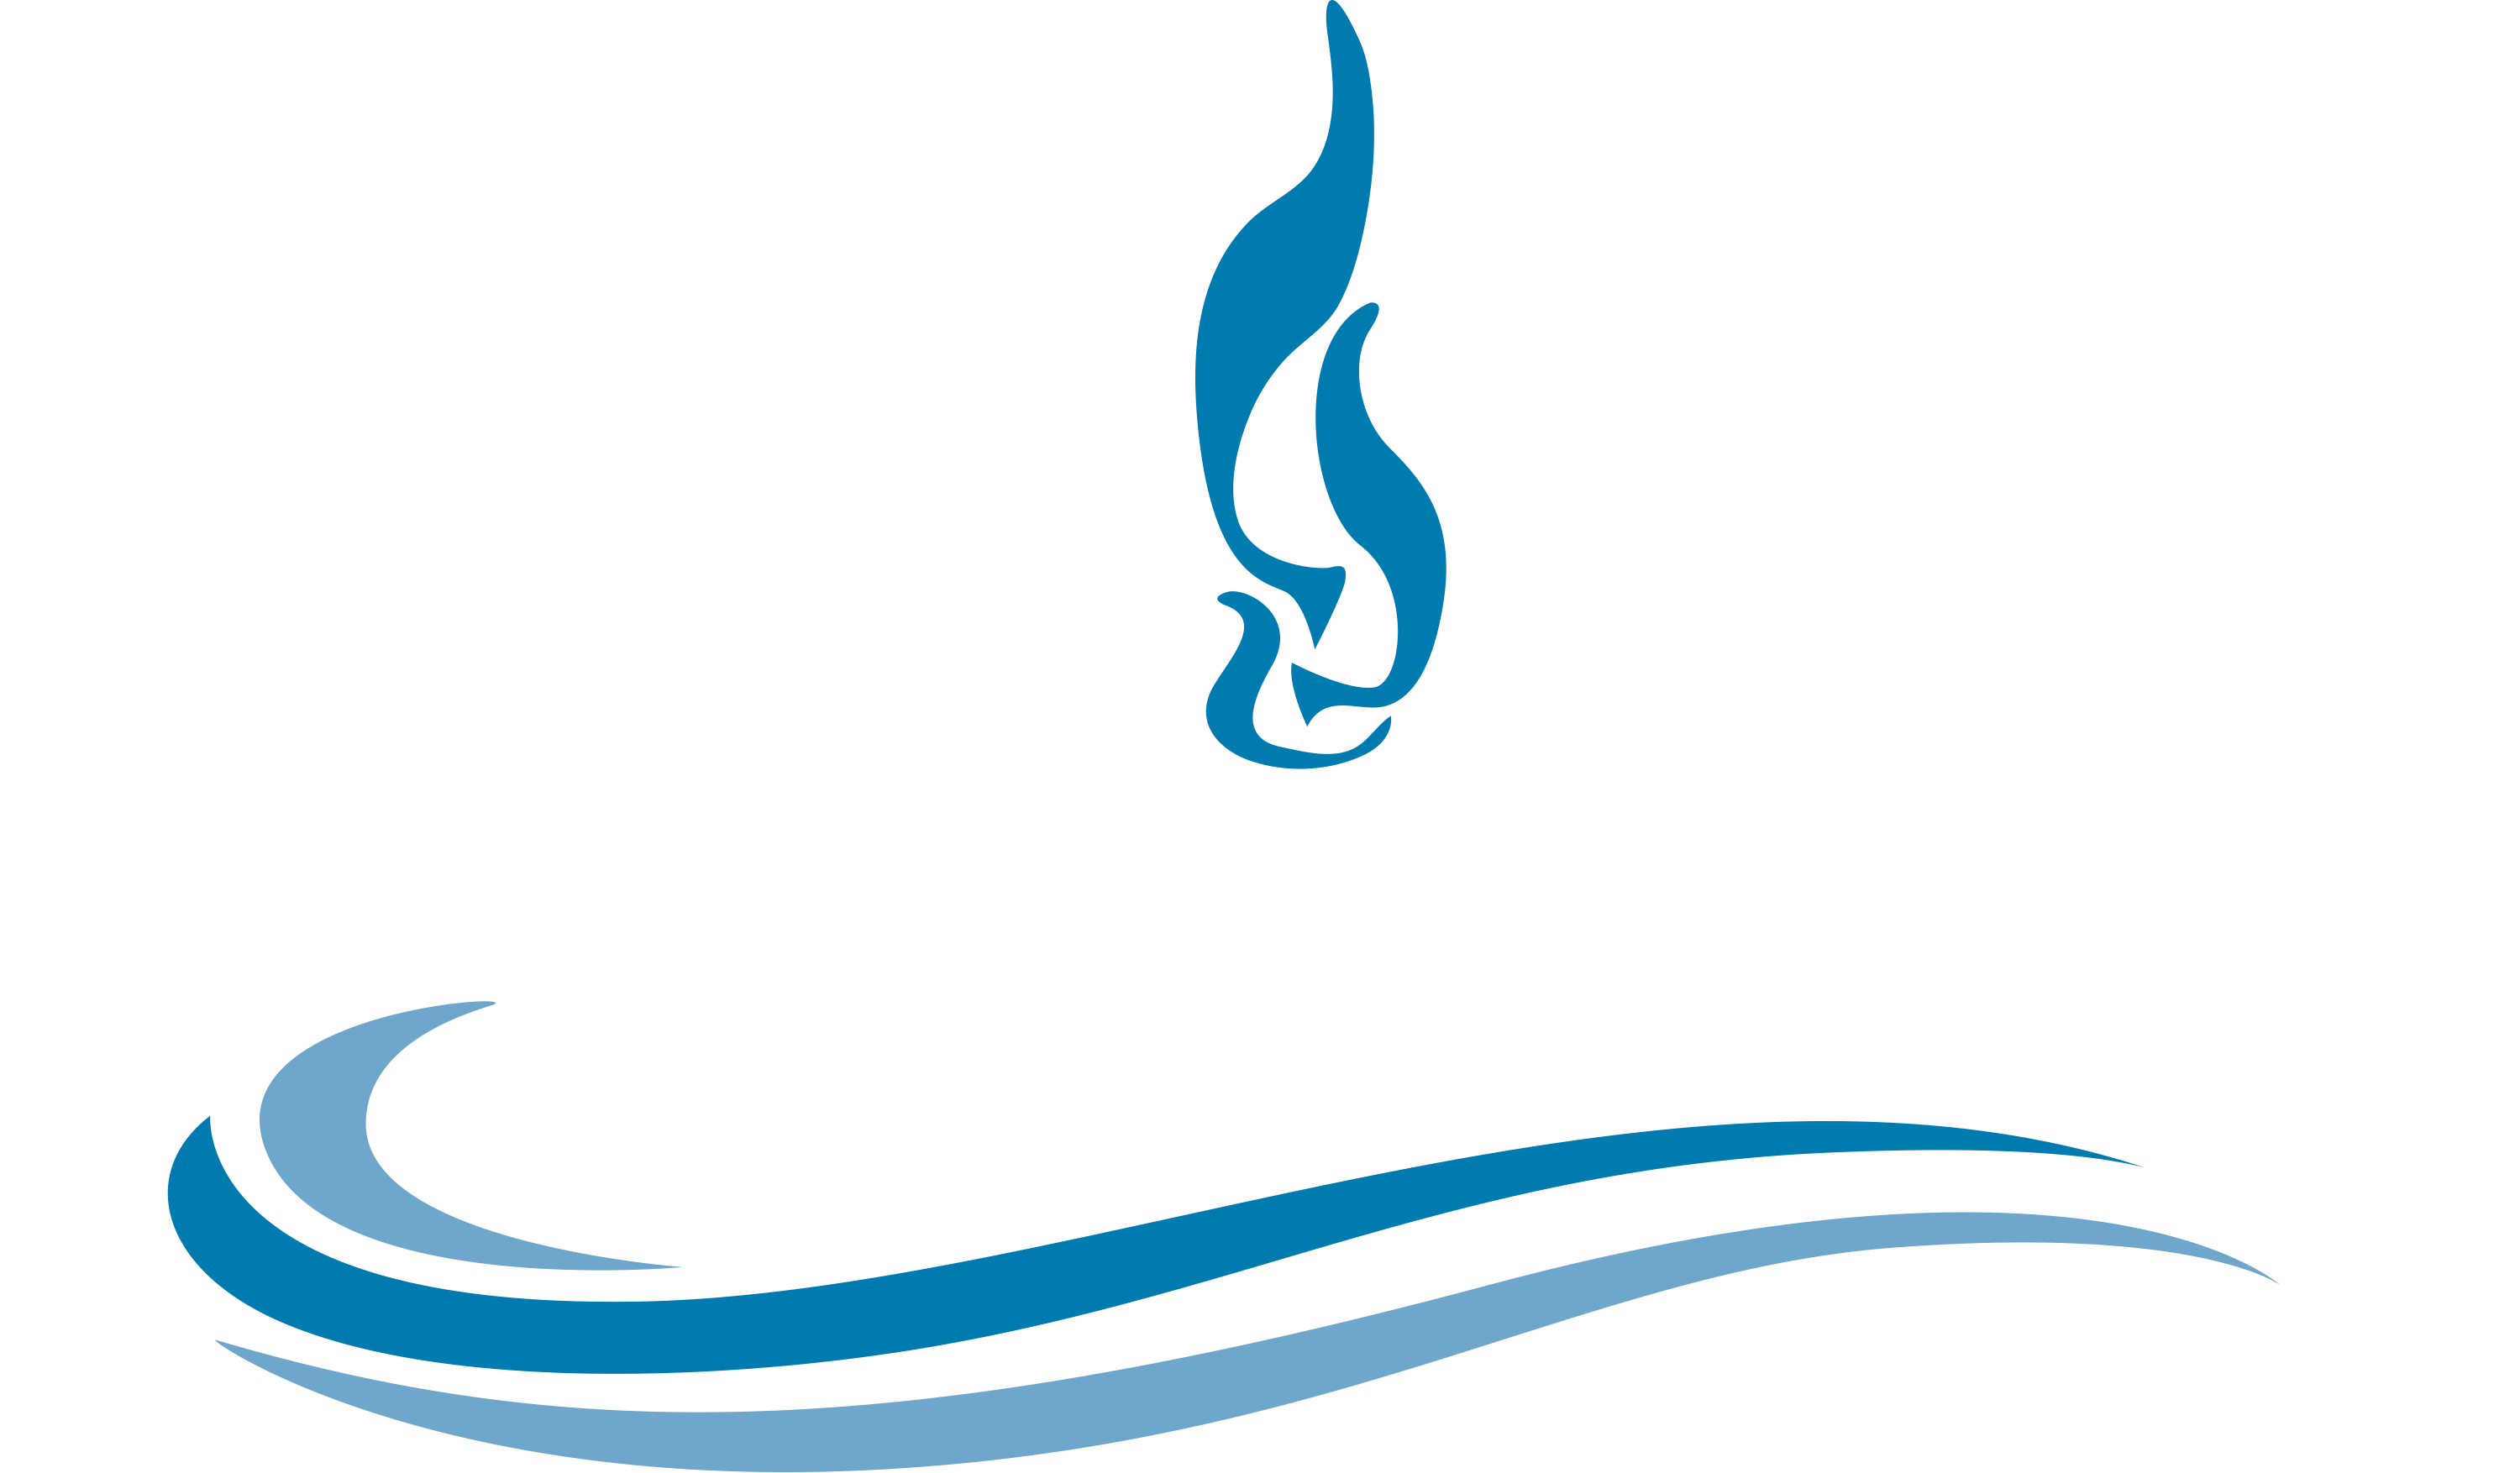 Lake Fire Winery